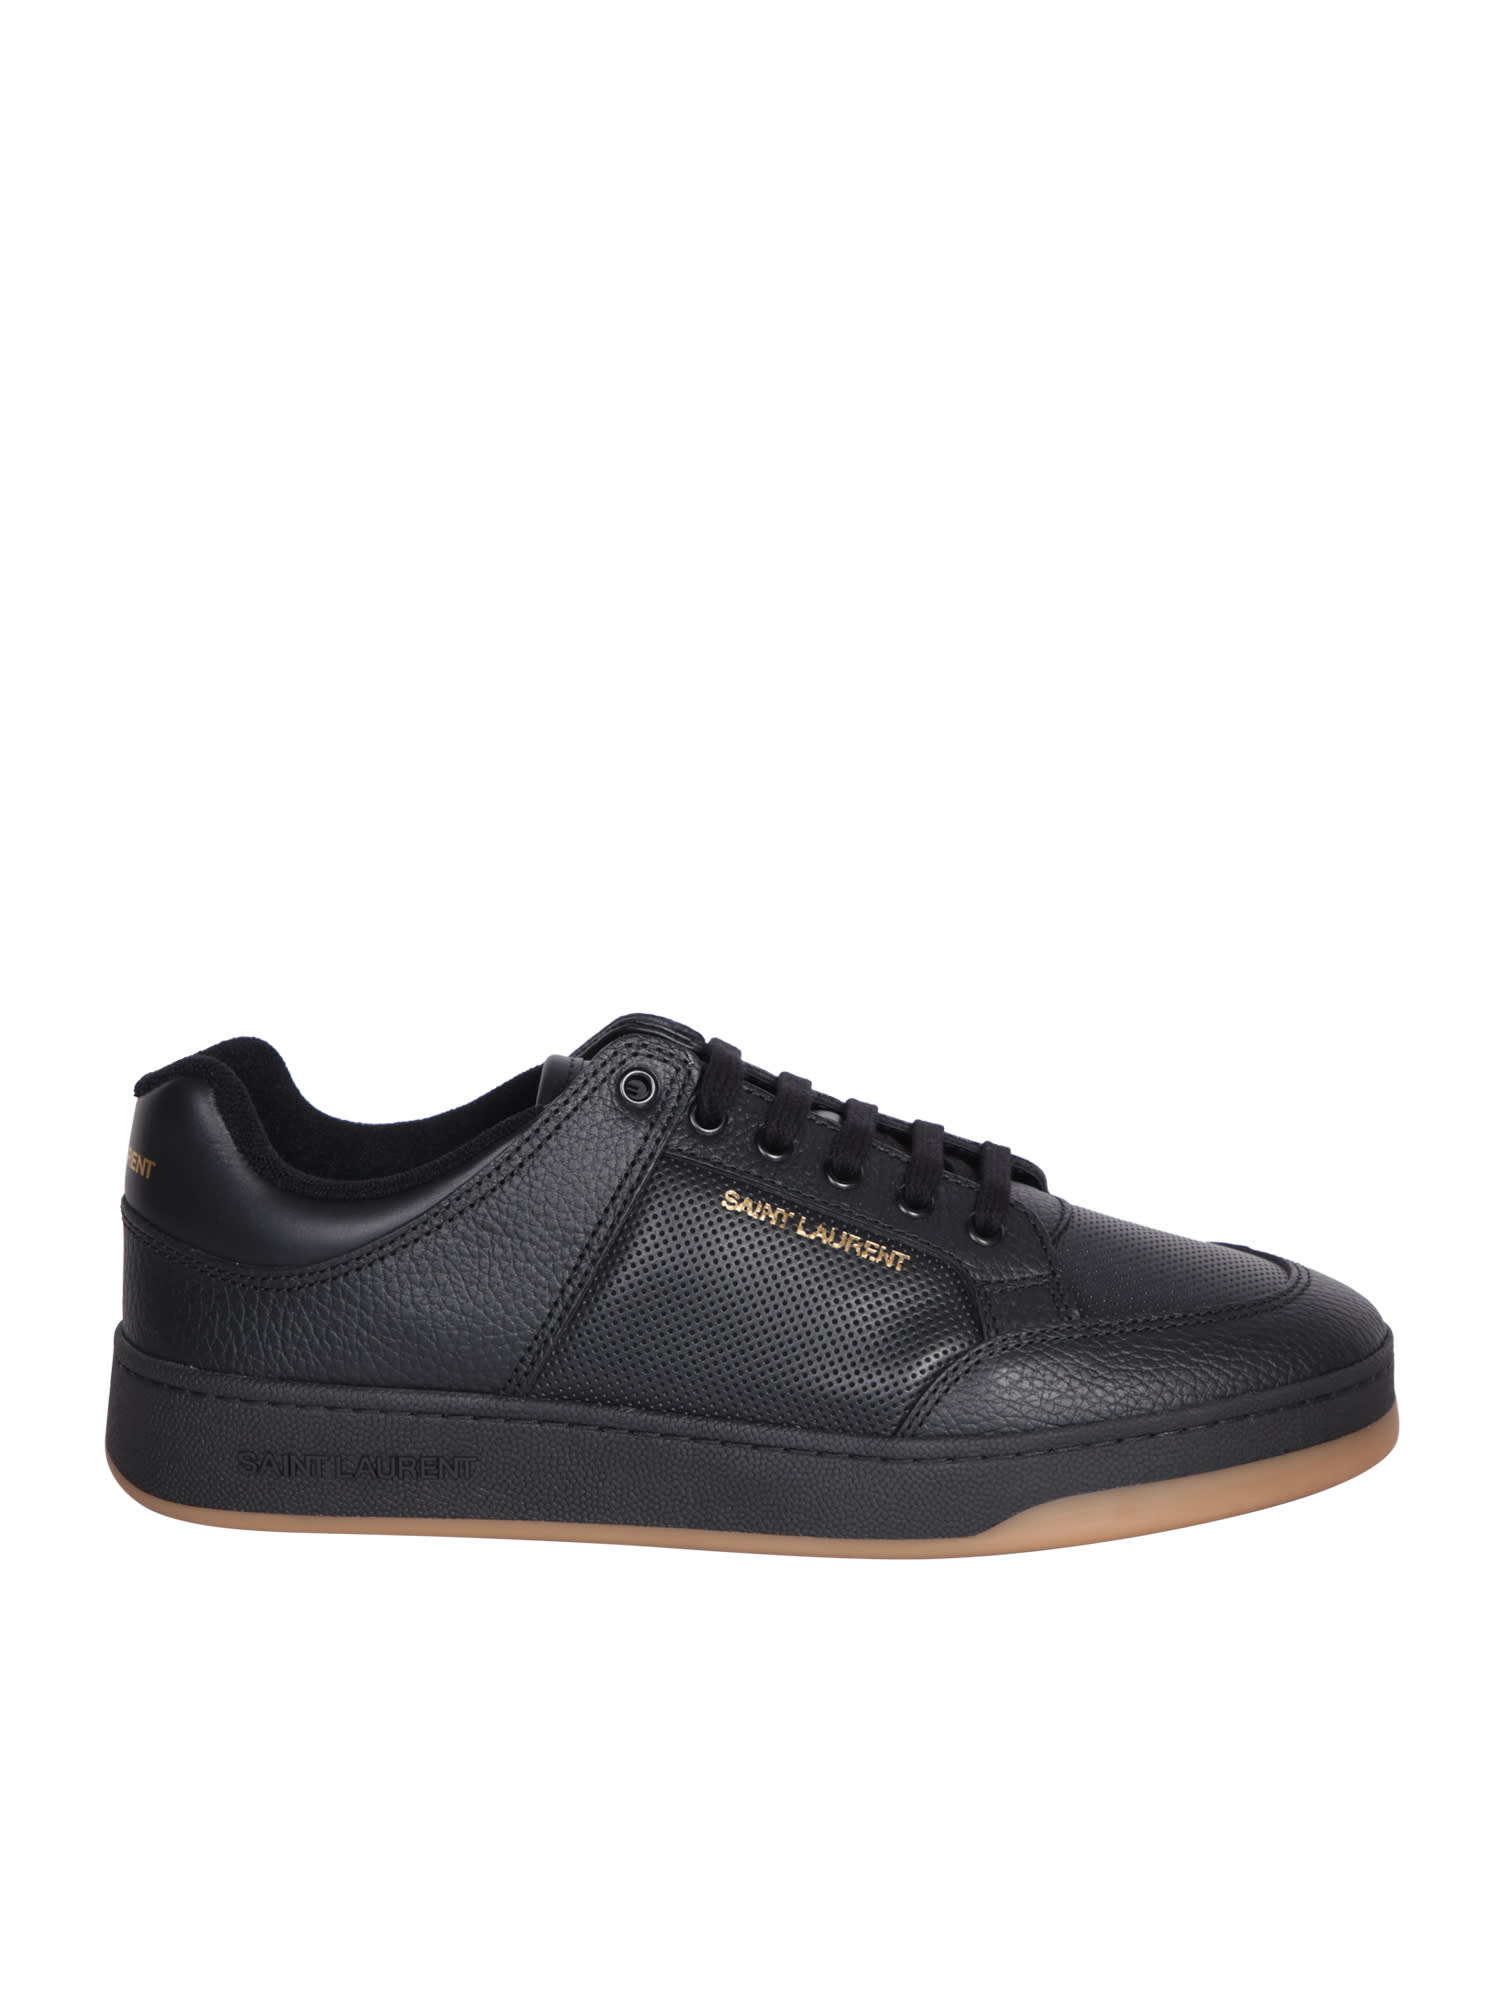 Shop Saint Laurent Sneakers Sl/61 Black